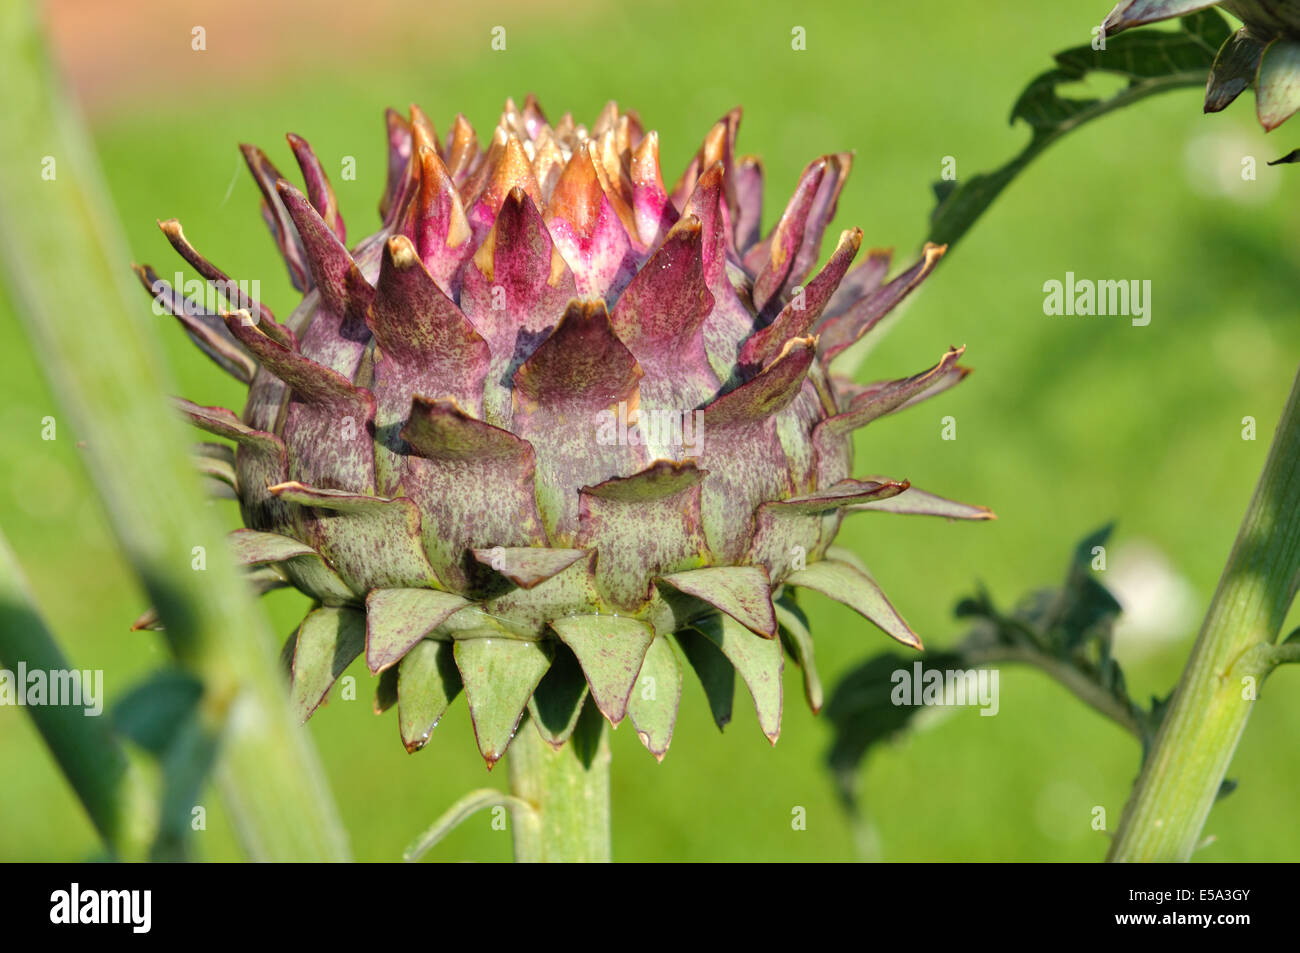 artichoke head in a garden on green background Stock Photo